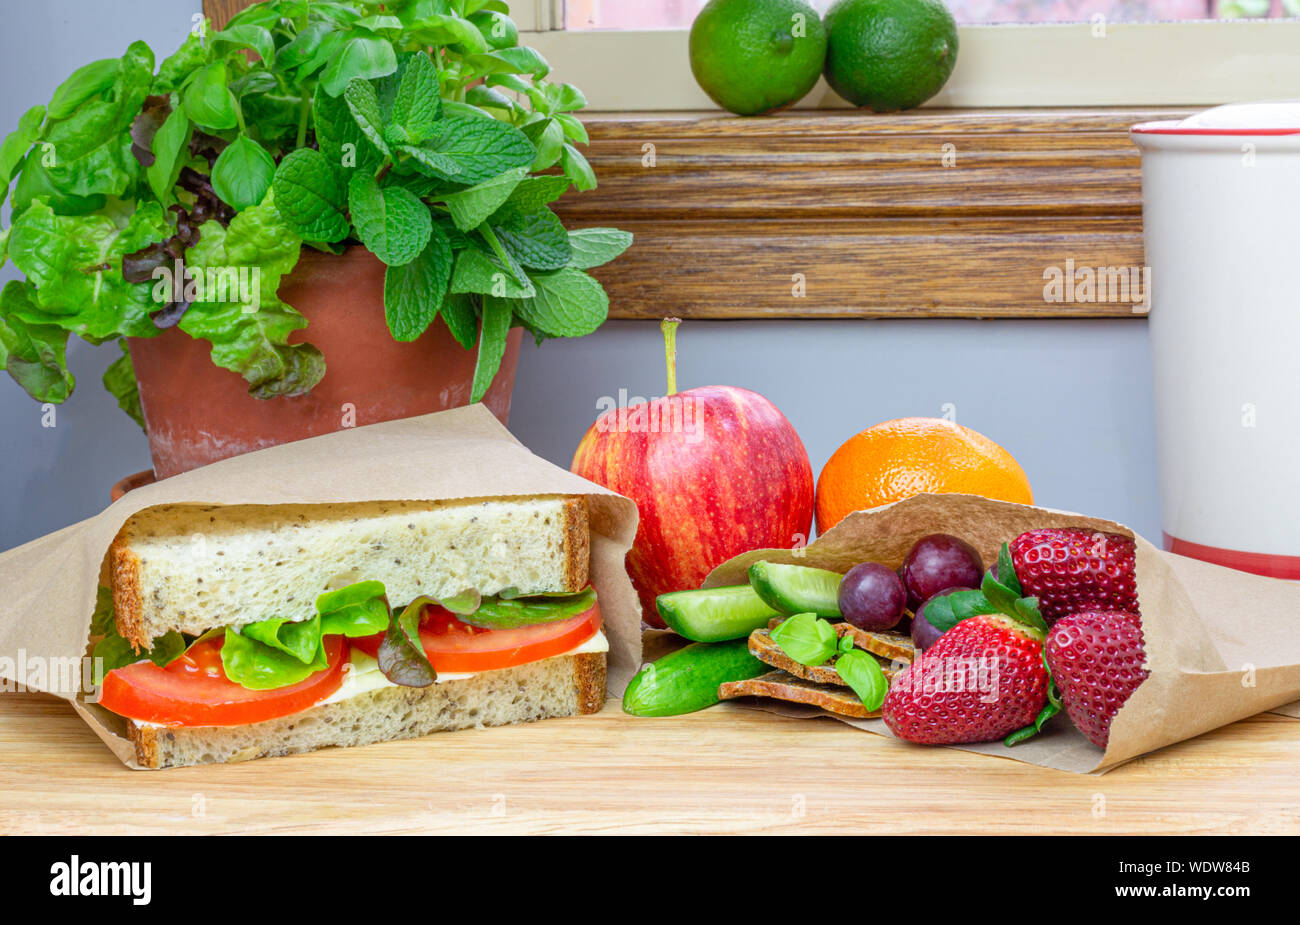 Mittagessen mit authentische hausgemachte Sandwiches und frische Lebensmittel aus recyclingfähigem Papier sandwich Beutel verpackt, Kunststoff freie Alternative Stockfoto